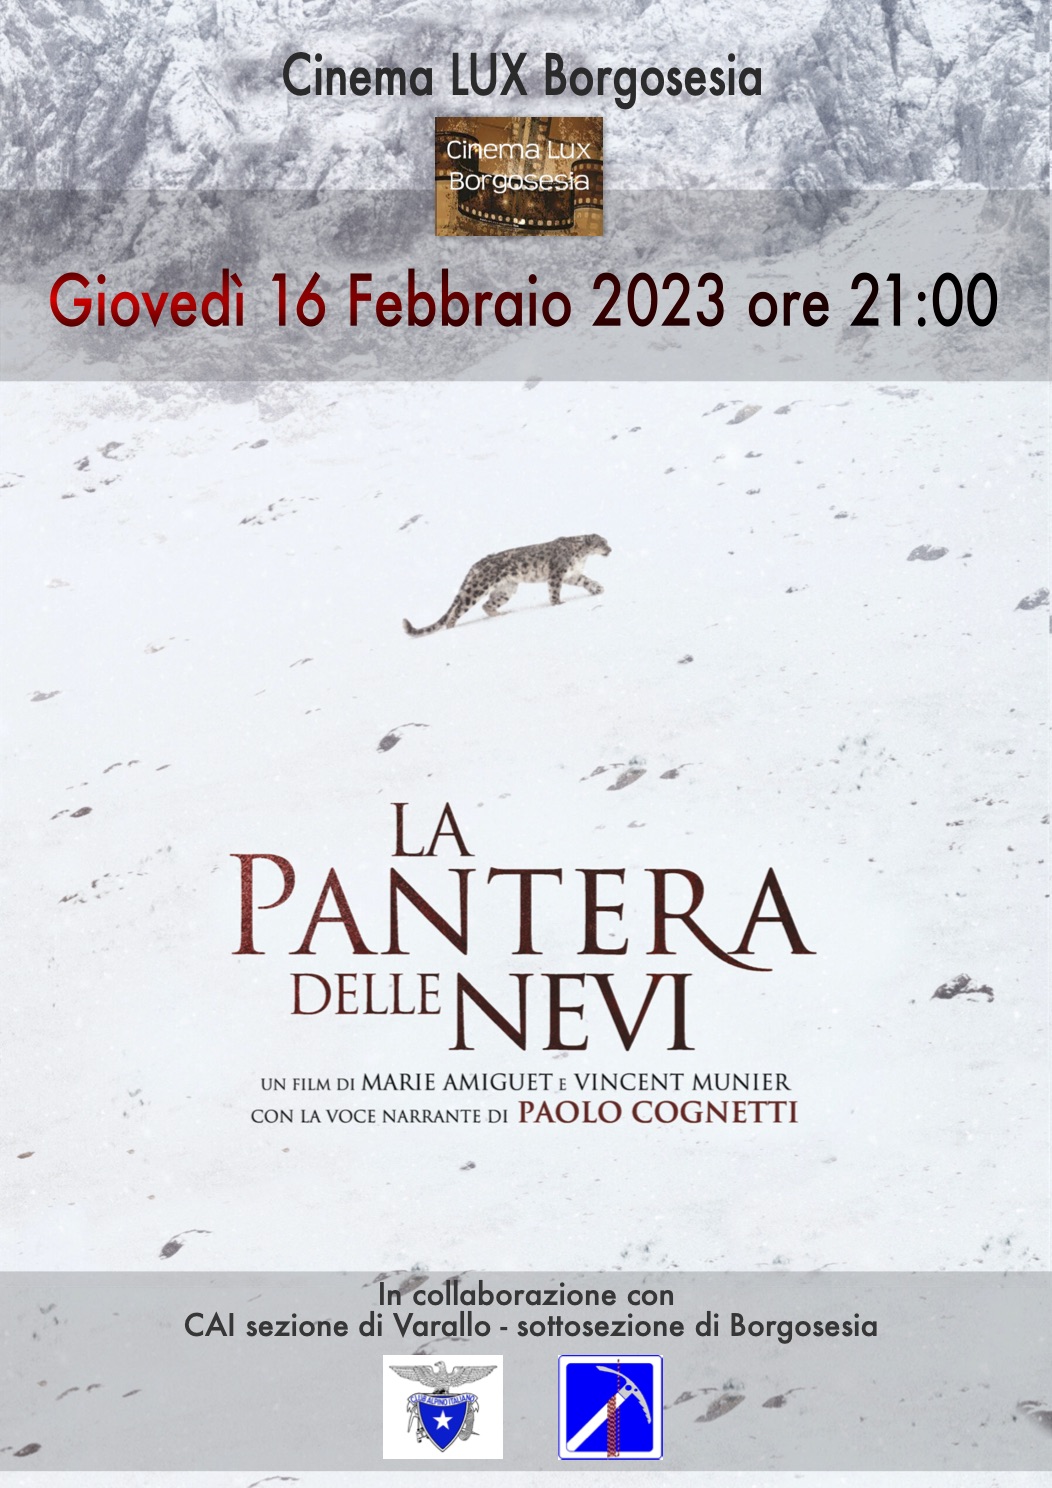 Cinema LUX a Borgosesia -Film "LA PANTERA DELLE NEVI"